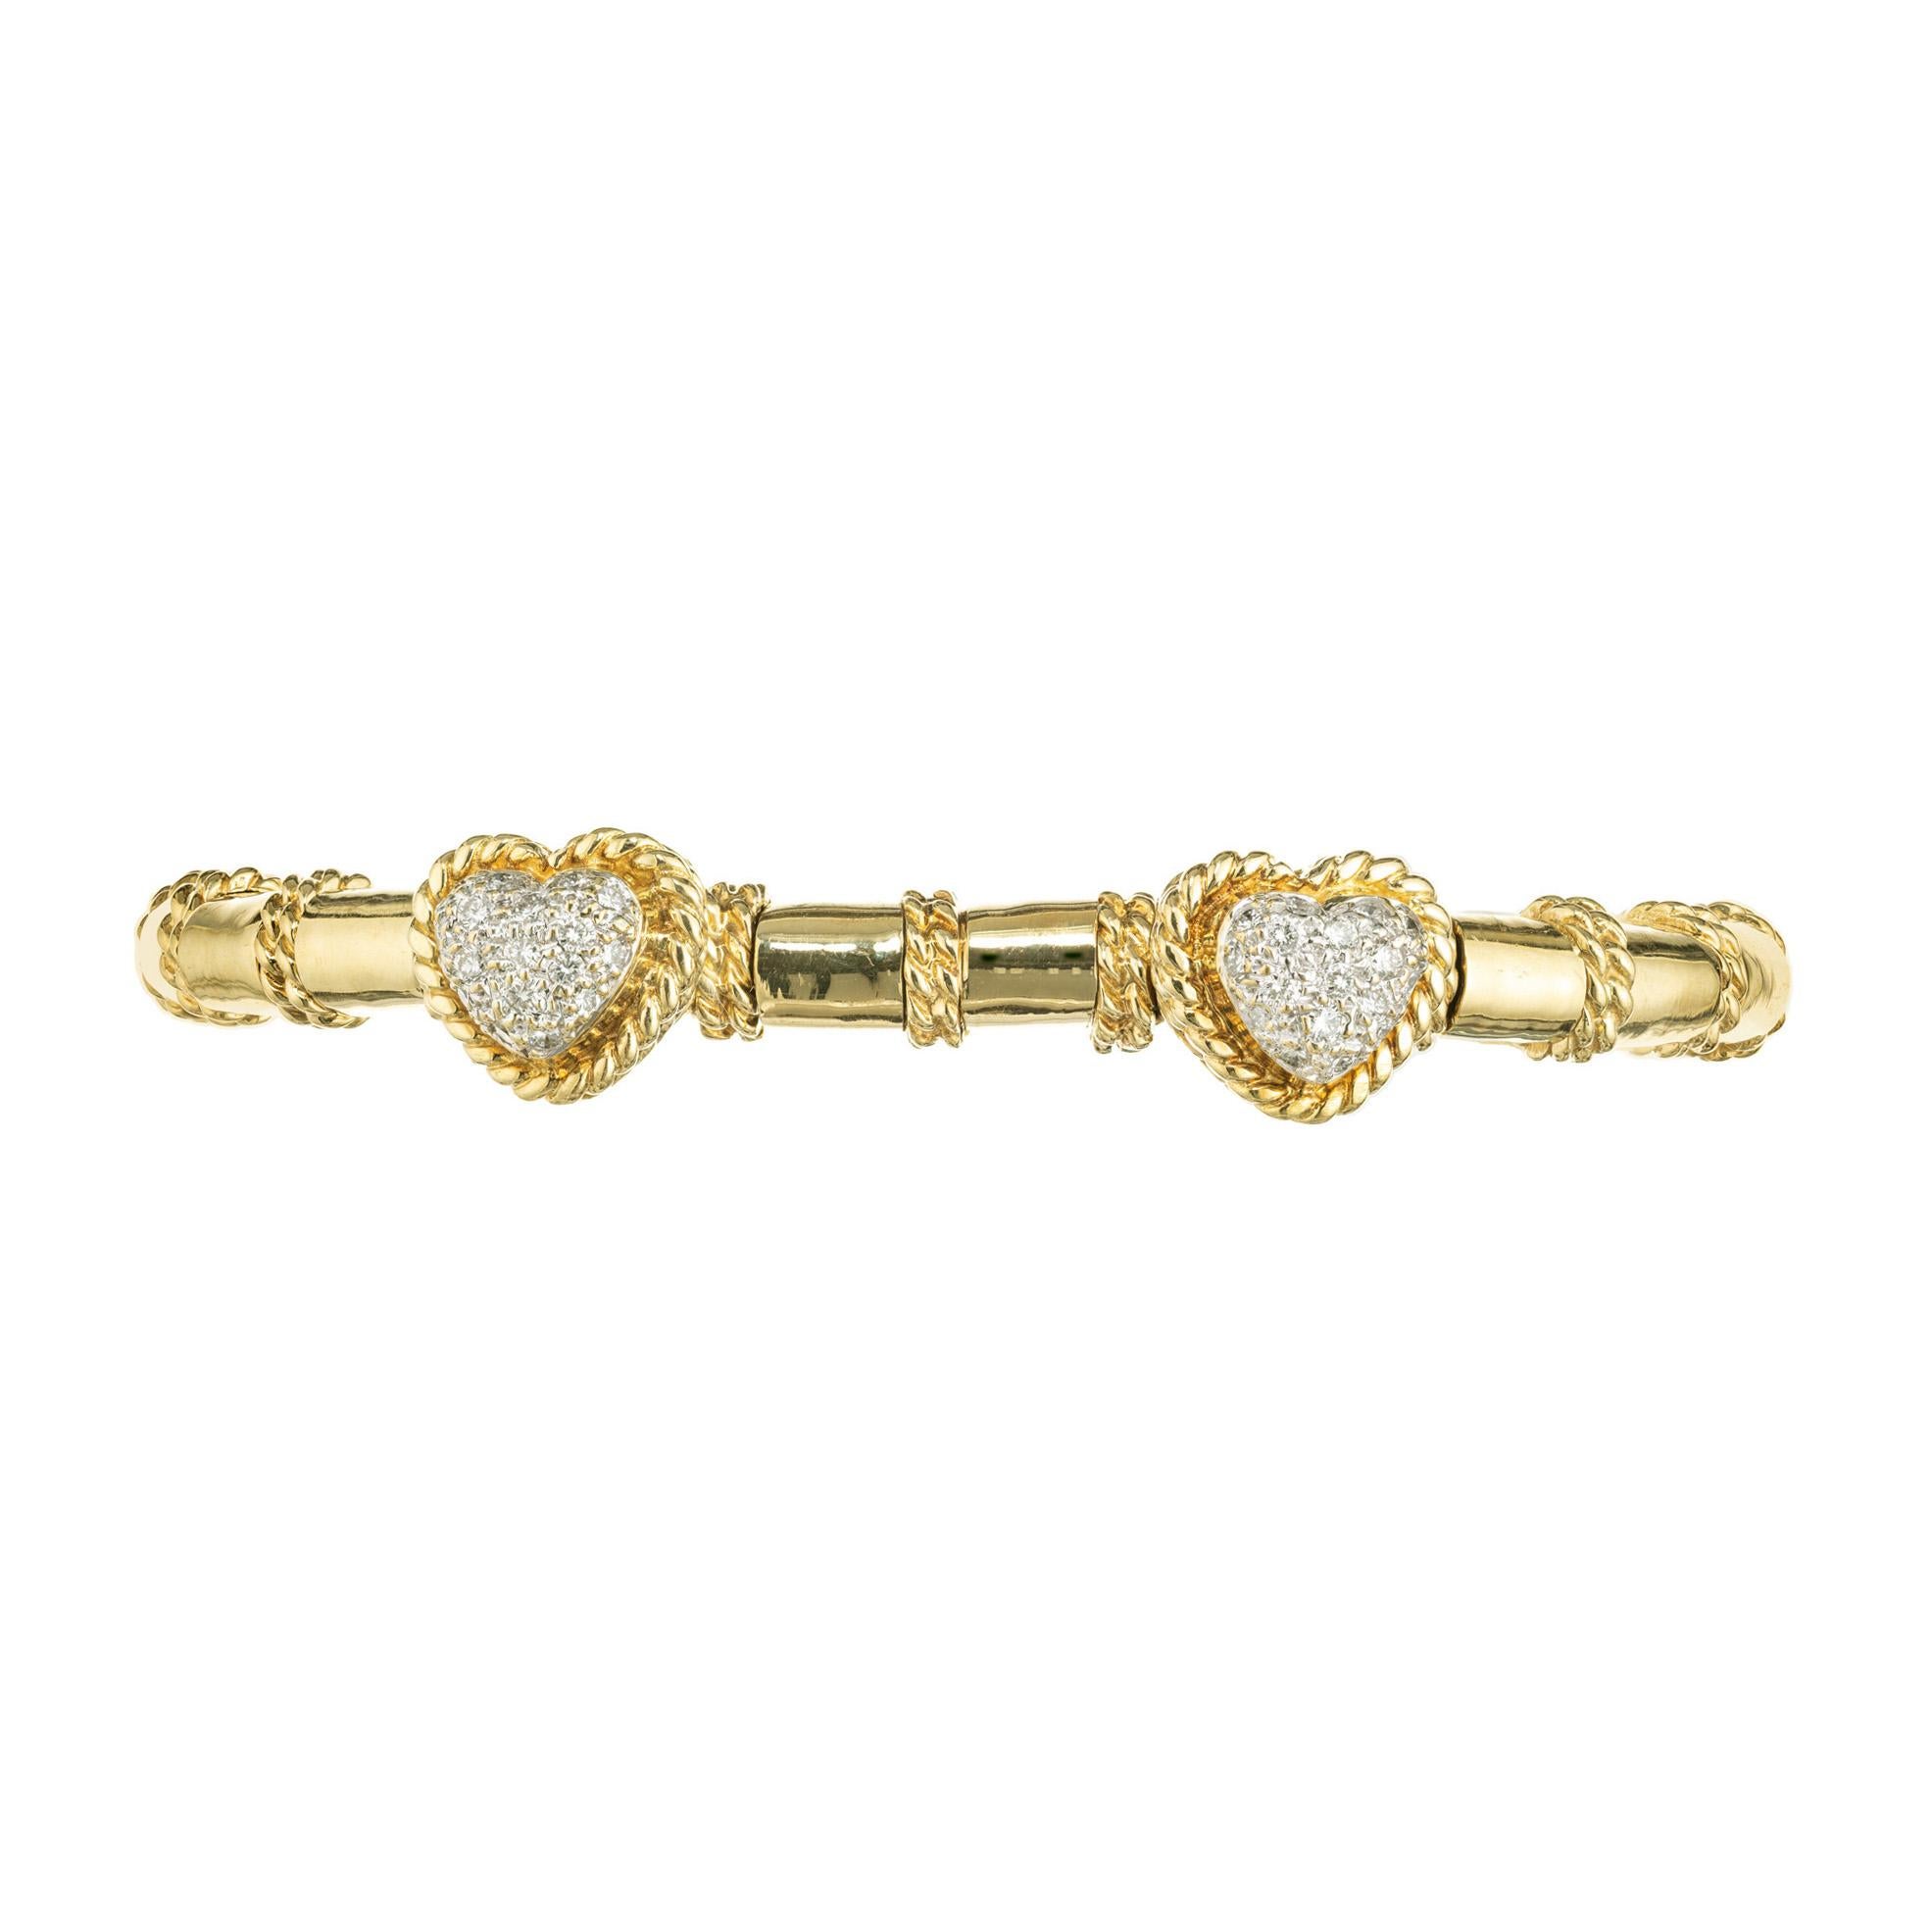 Cassis-Diamant-Baumel-Herz-Armband. 34 runde Vollschliff-Diamanten in doppelt gedrehten Golddraht-Herzformen, entlang eines 18 Karat Gelbgold-Slip-on-Armbandes mit gedrehten Golddraht-Trennstäben gefasst. Passt für ein Handgelenk von 7-7,5 Zoll.